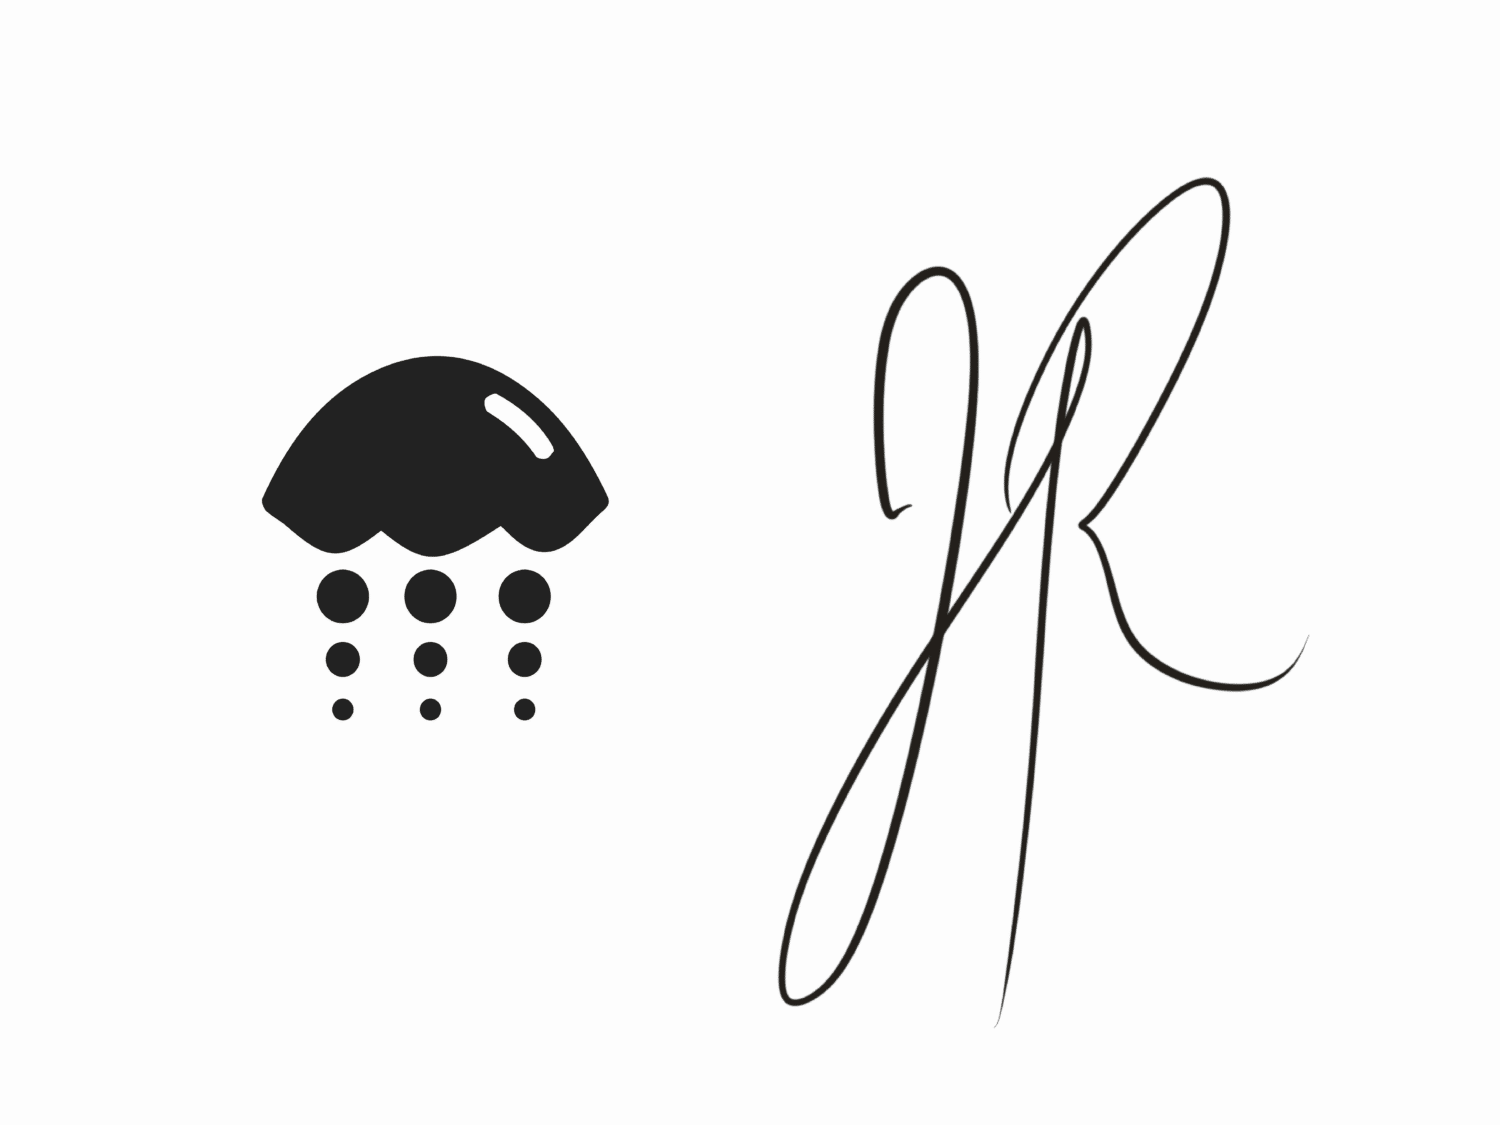 Joshua black signature.